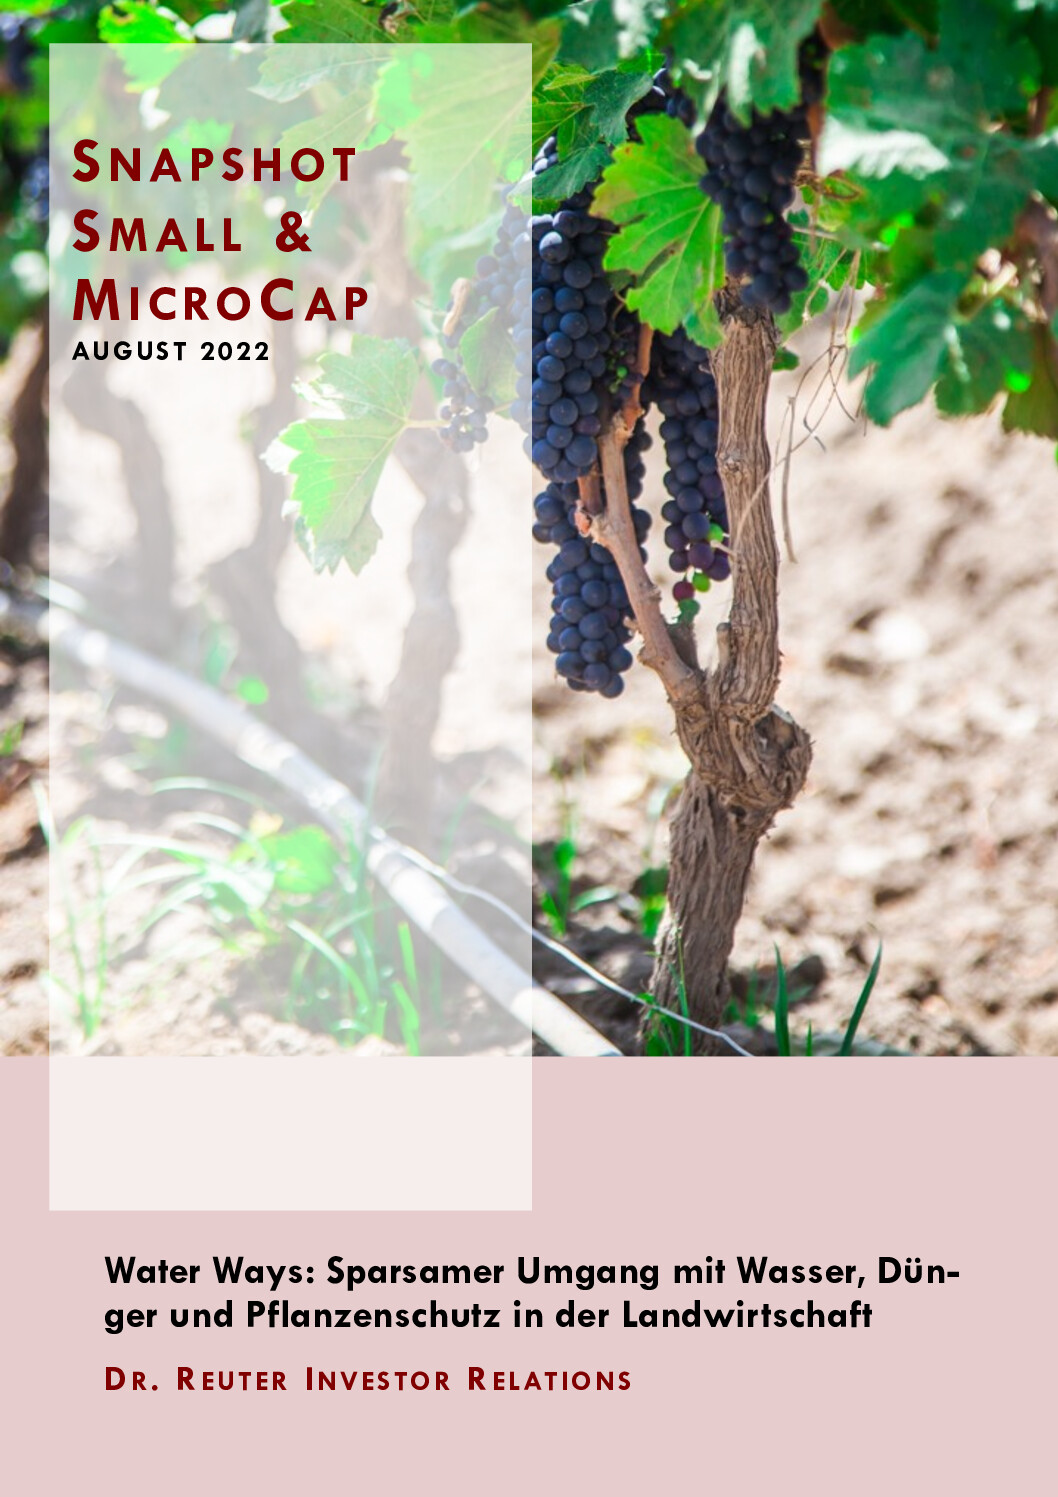 03.08.2022 Snapshot Water Ways: Sparsamer Umgang mit Wasser, Dünger und Pflanzenschutz in der Landwirtschaft